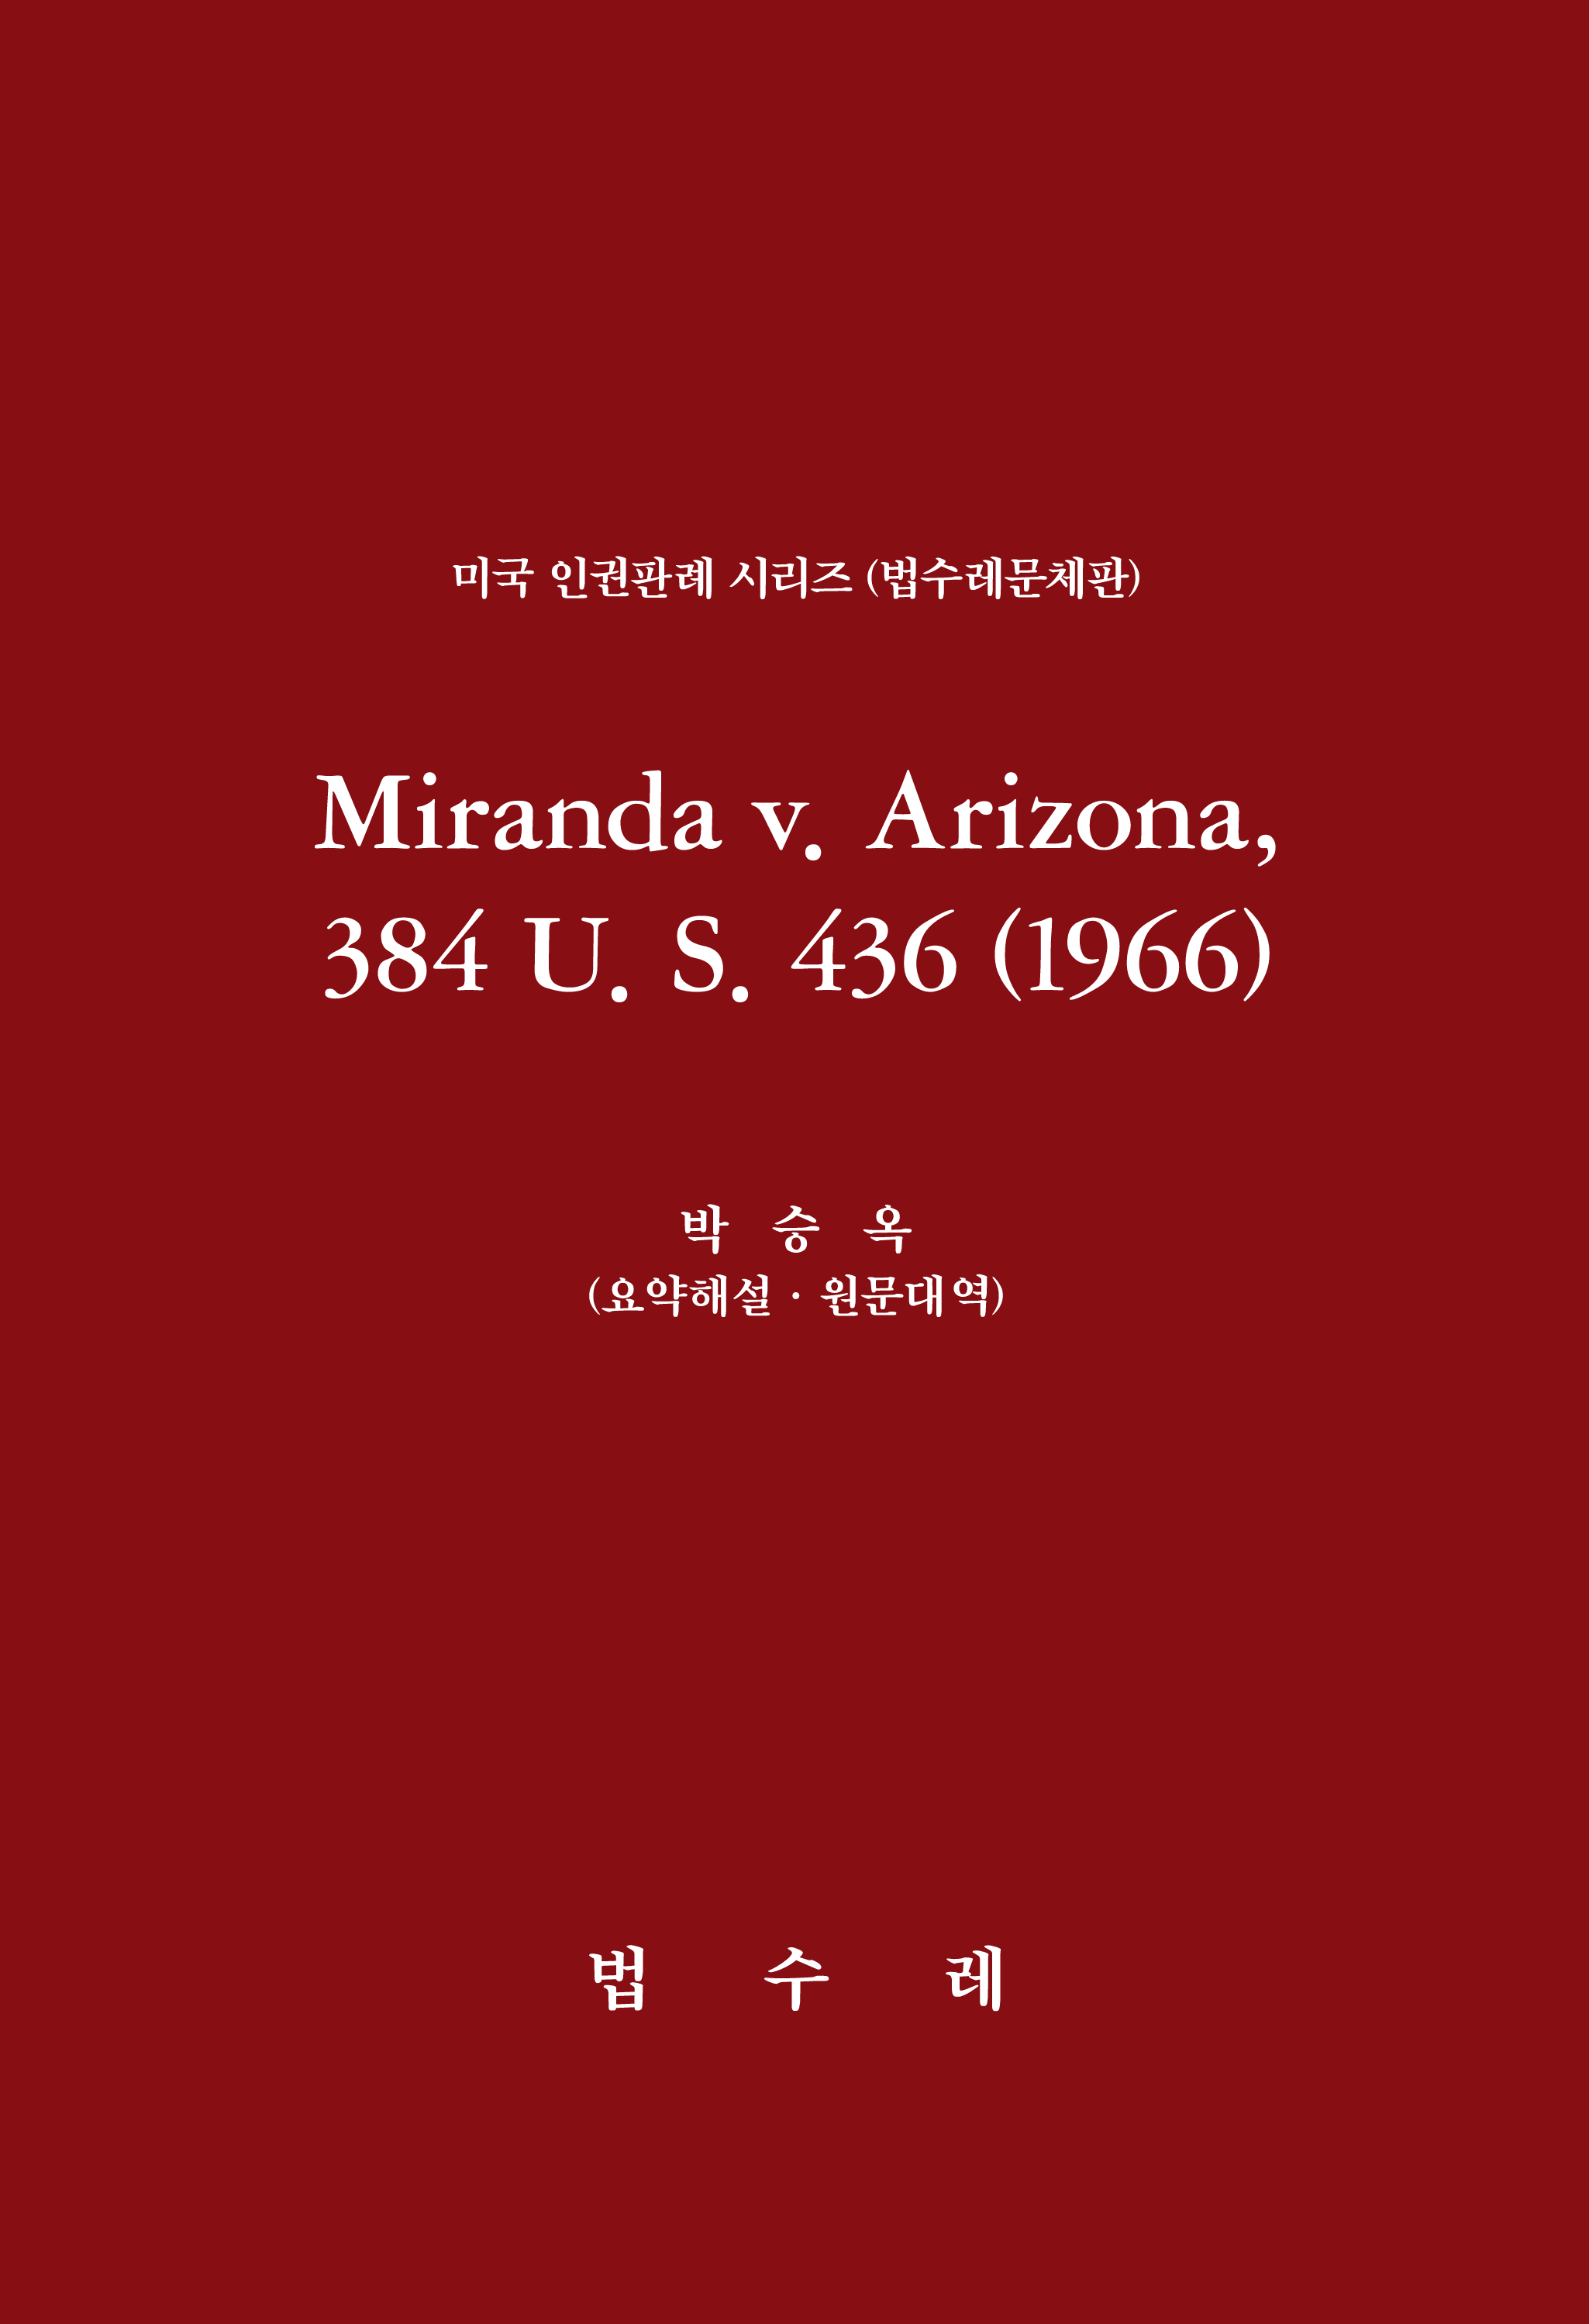 Miranda v. Arizona, 384 U. S. 436 (1966)